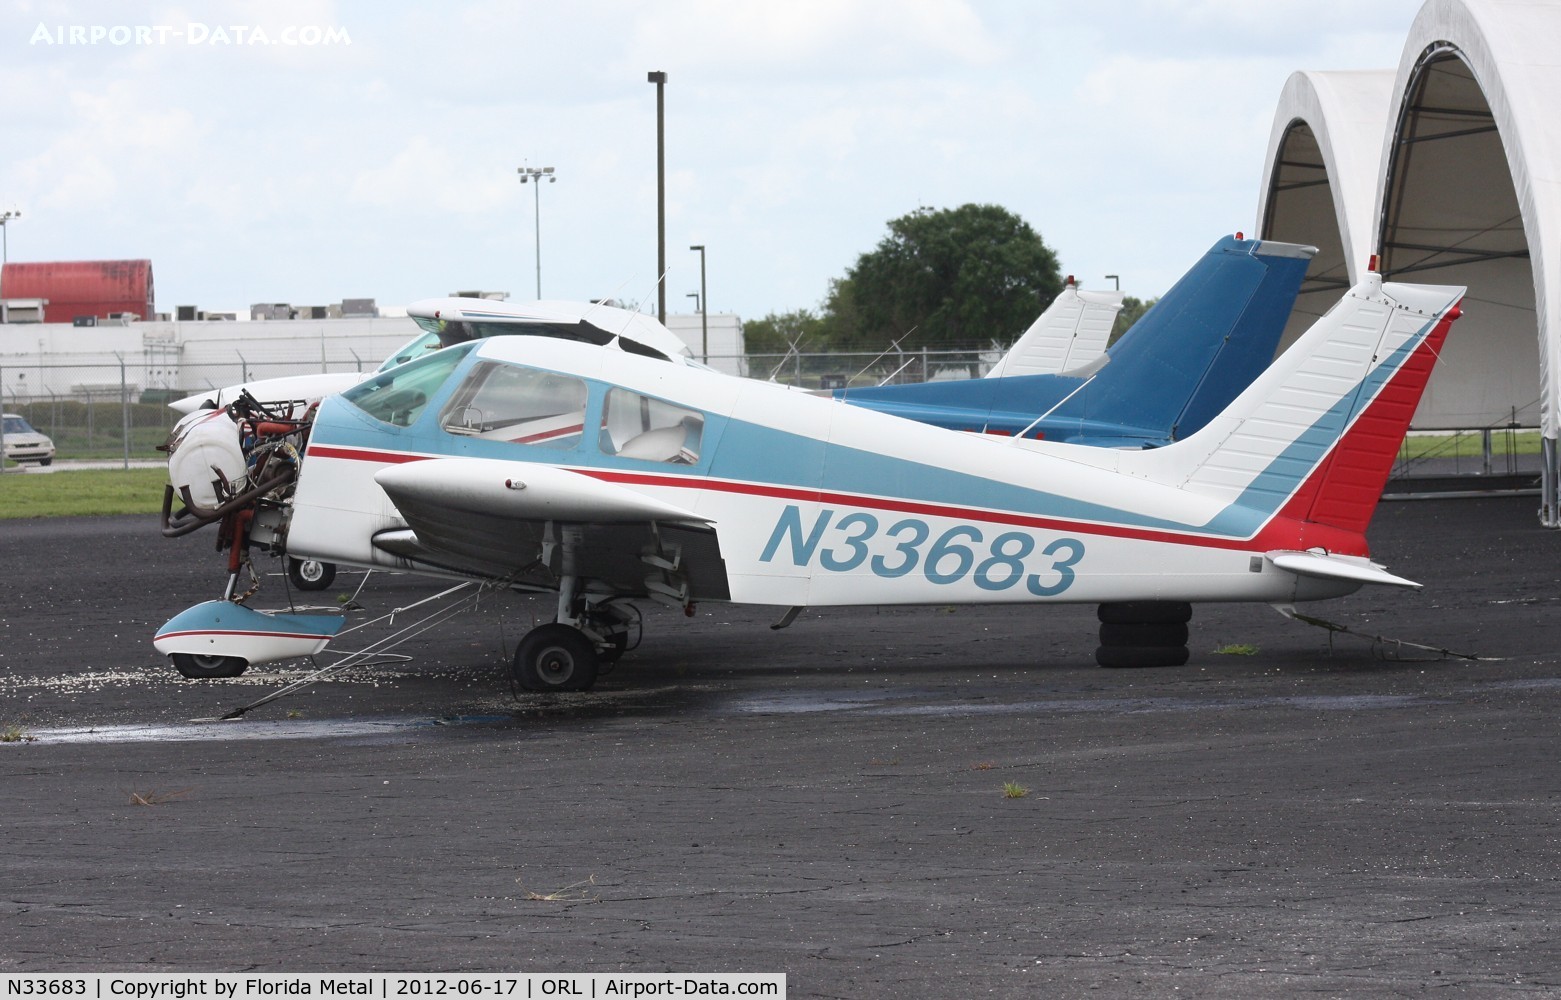 N33683, 1975 Piper PA-28-140 C/N 28-7525226, PA-28-140